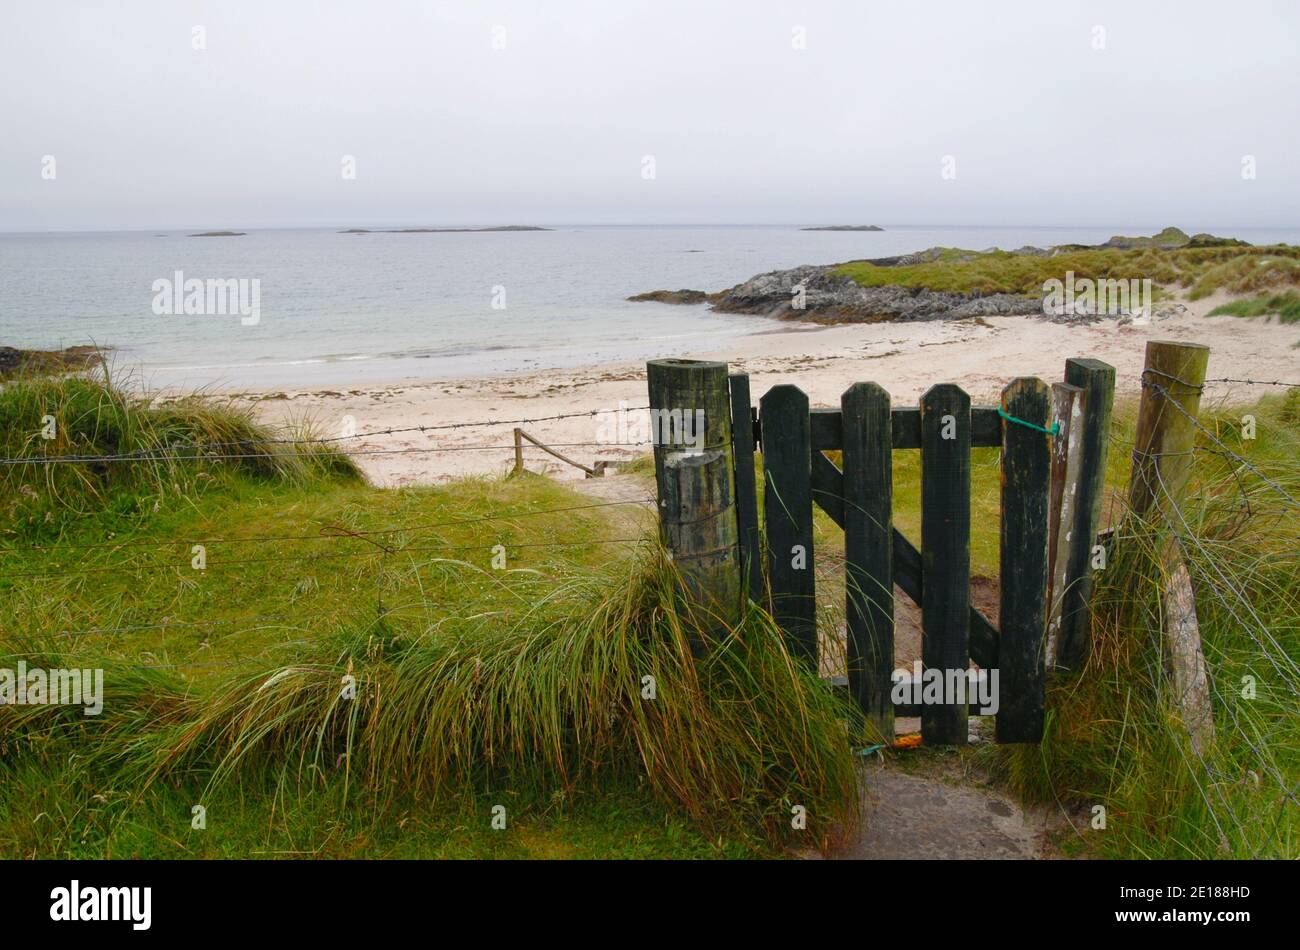 Scotland, Outer Hebrides, sandy beach Stock Photo